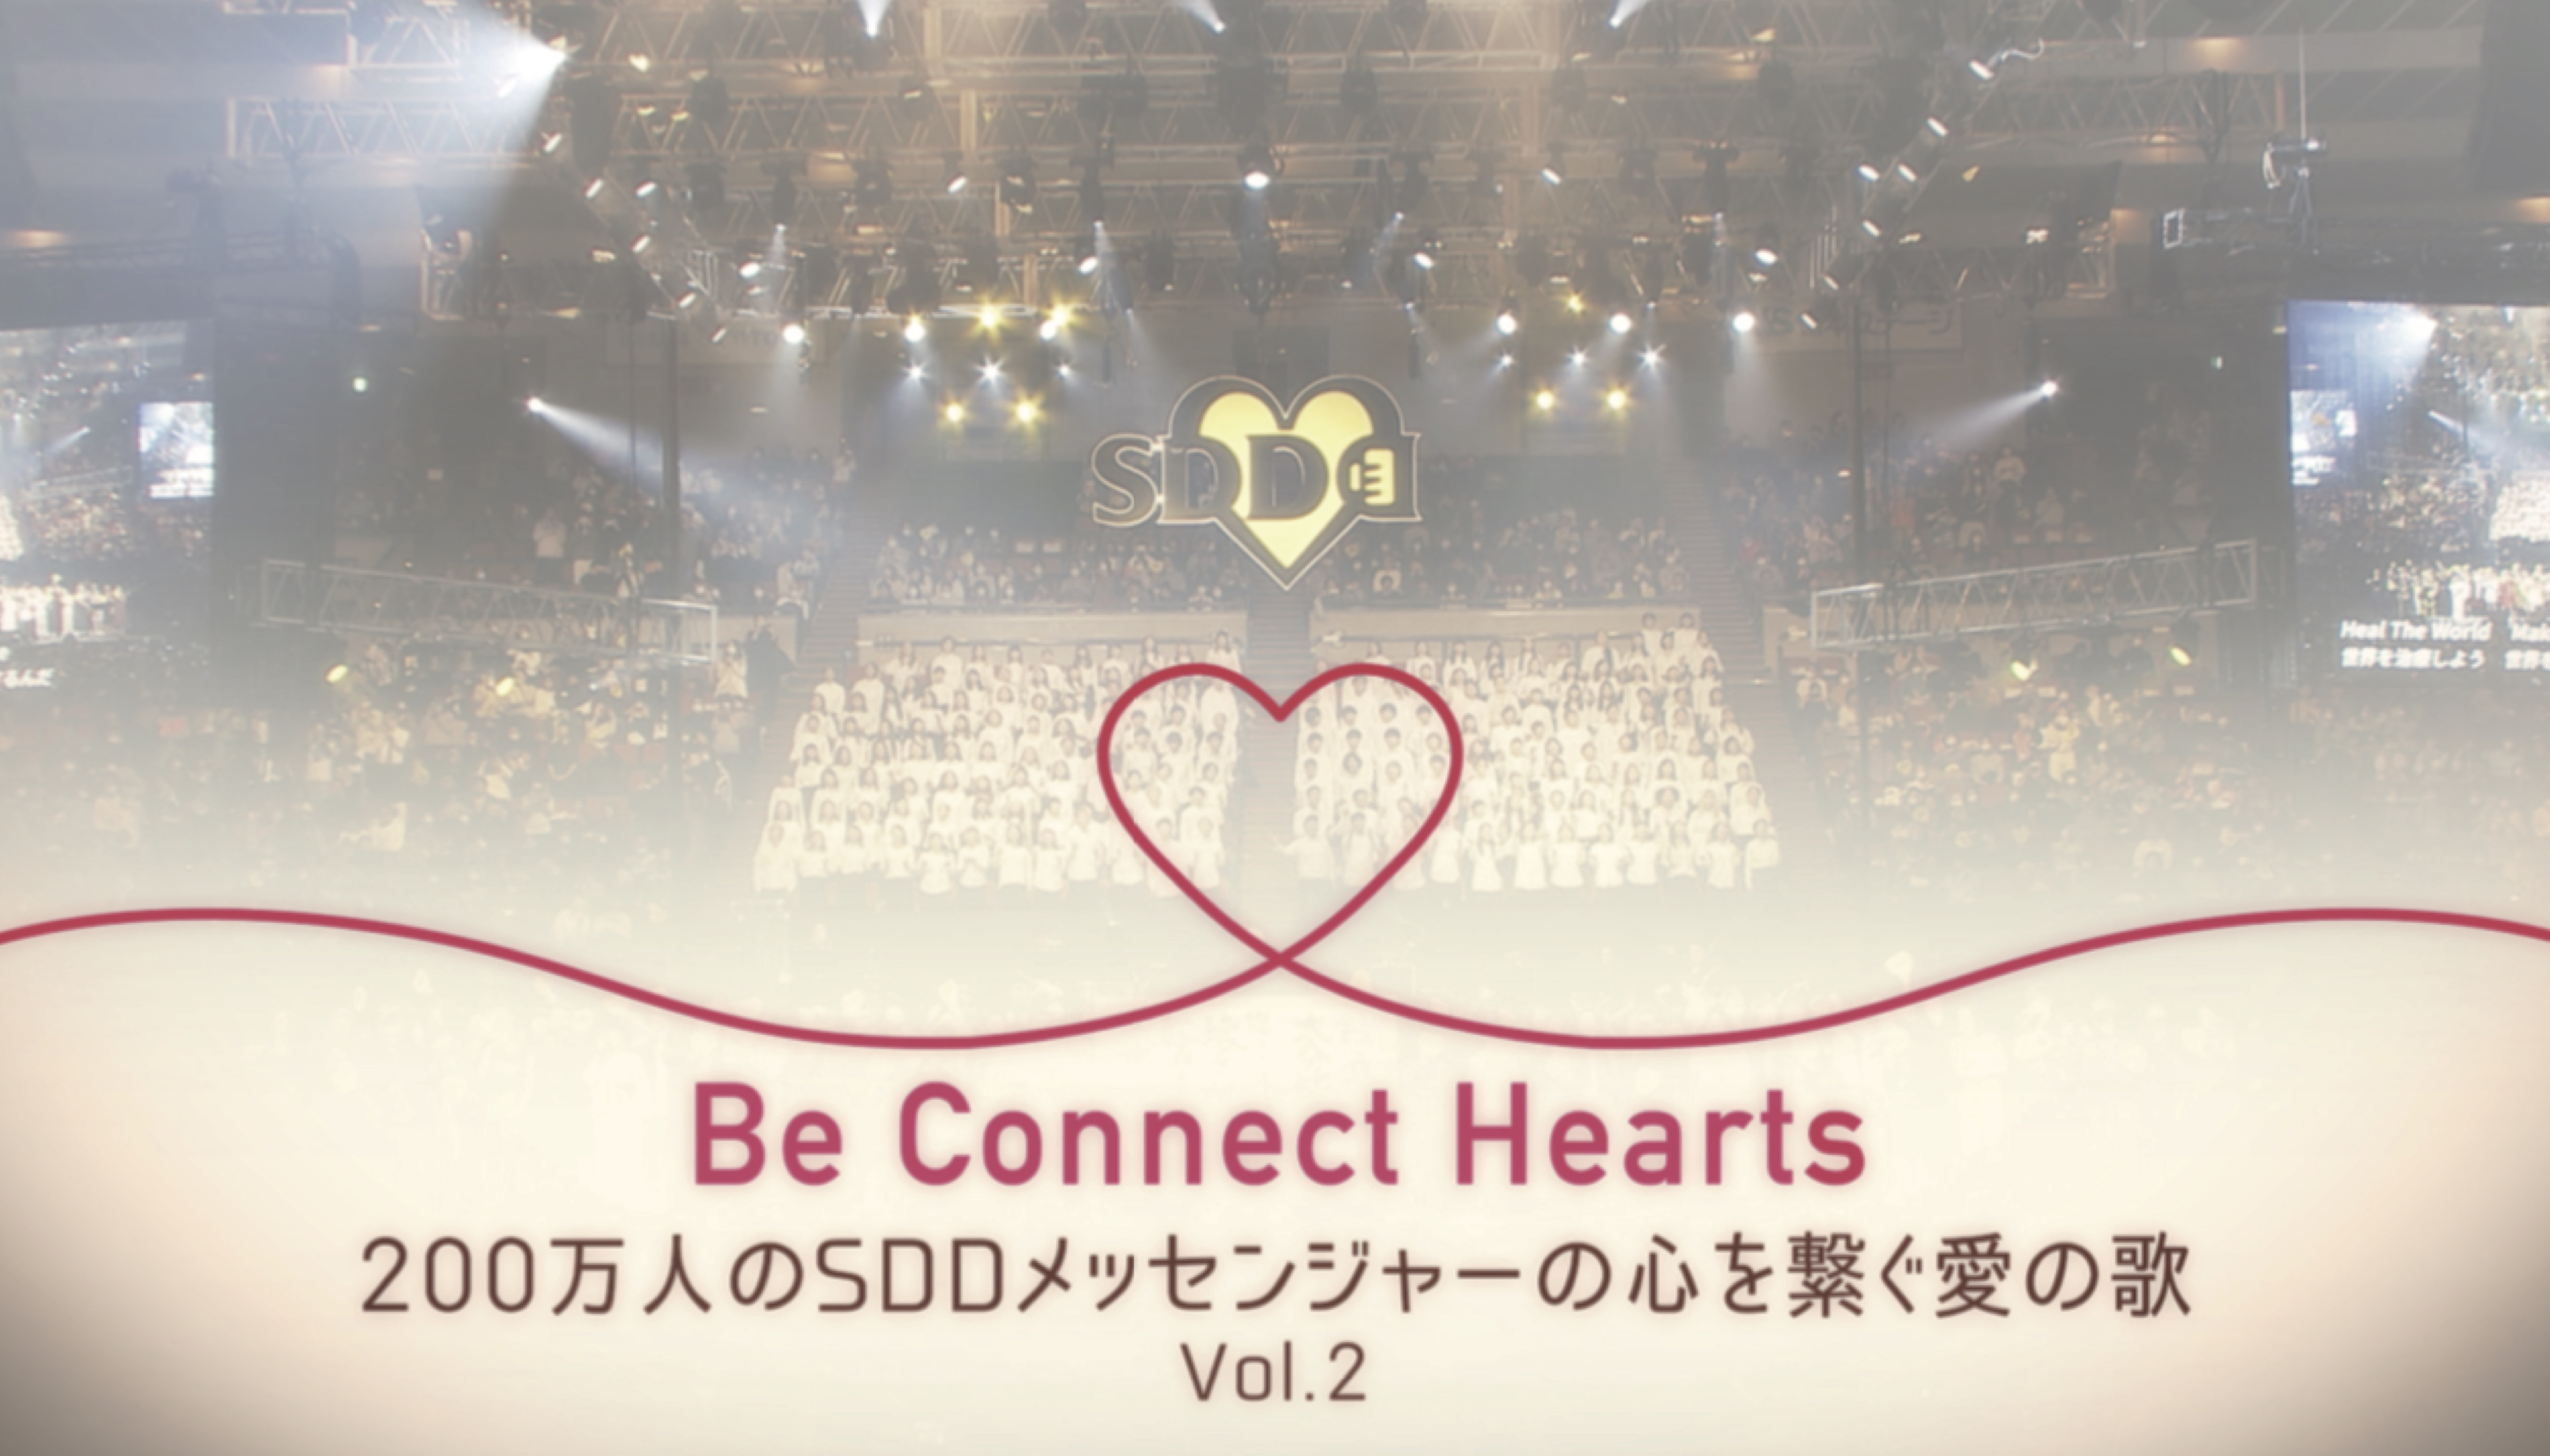 Be Connect Hearts 0 万人の Sdd メッセンジャーの心を繋ぐ愛の歌 動画公開 360concept